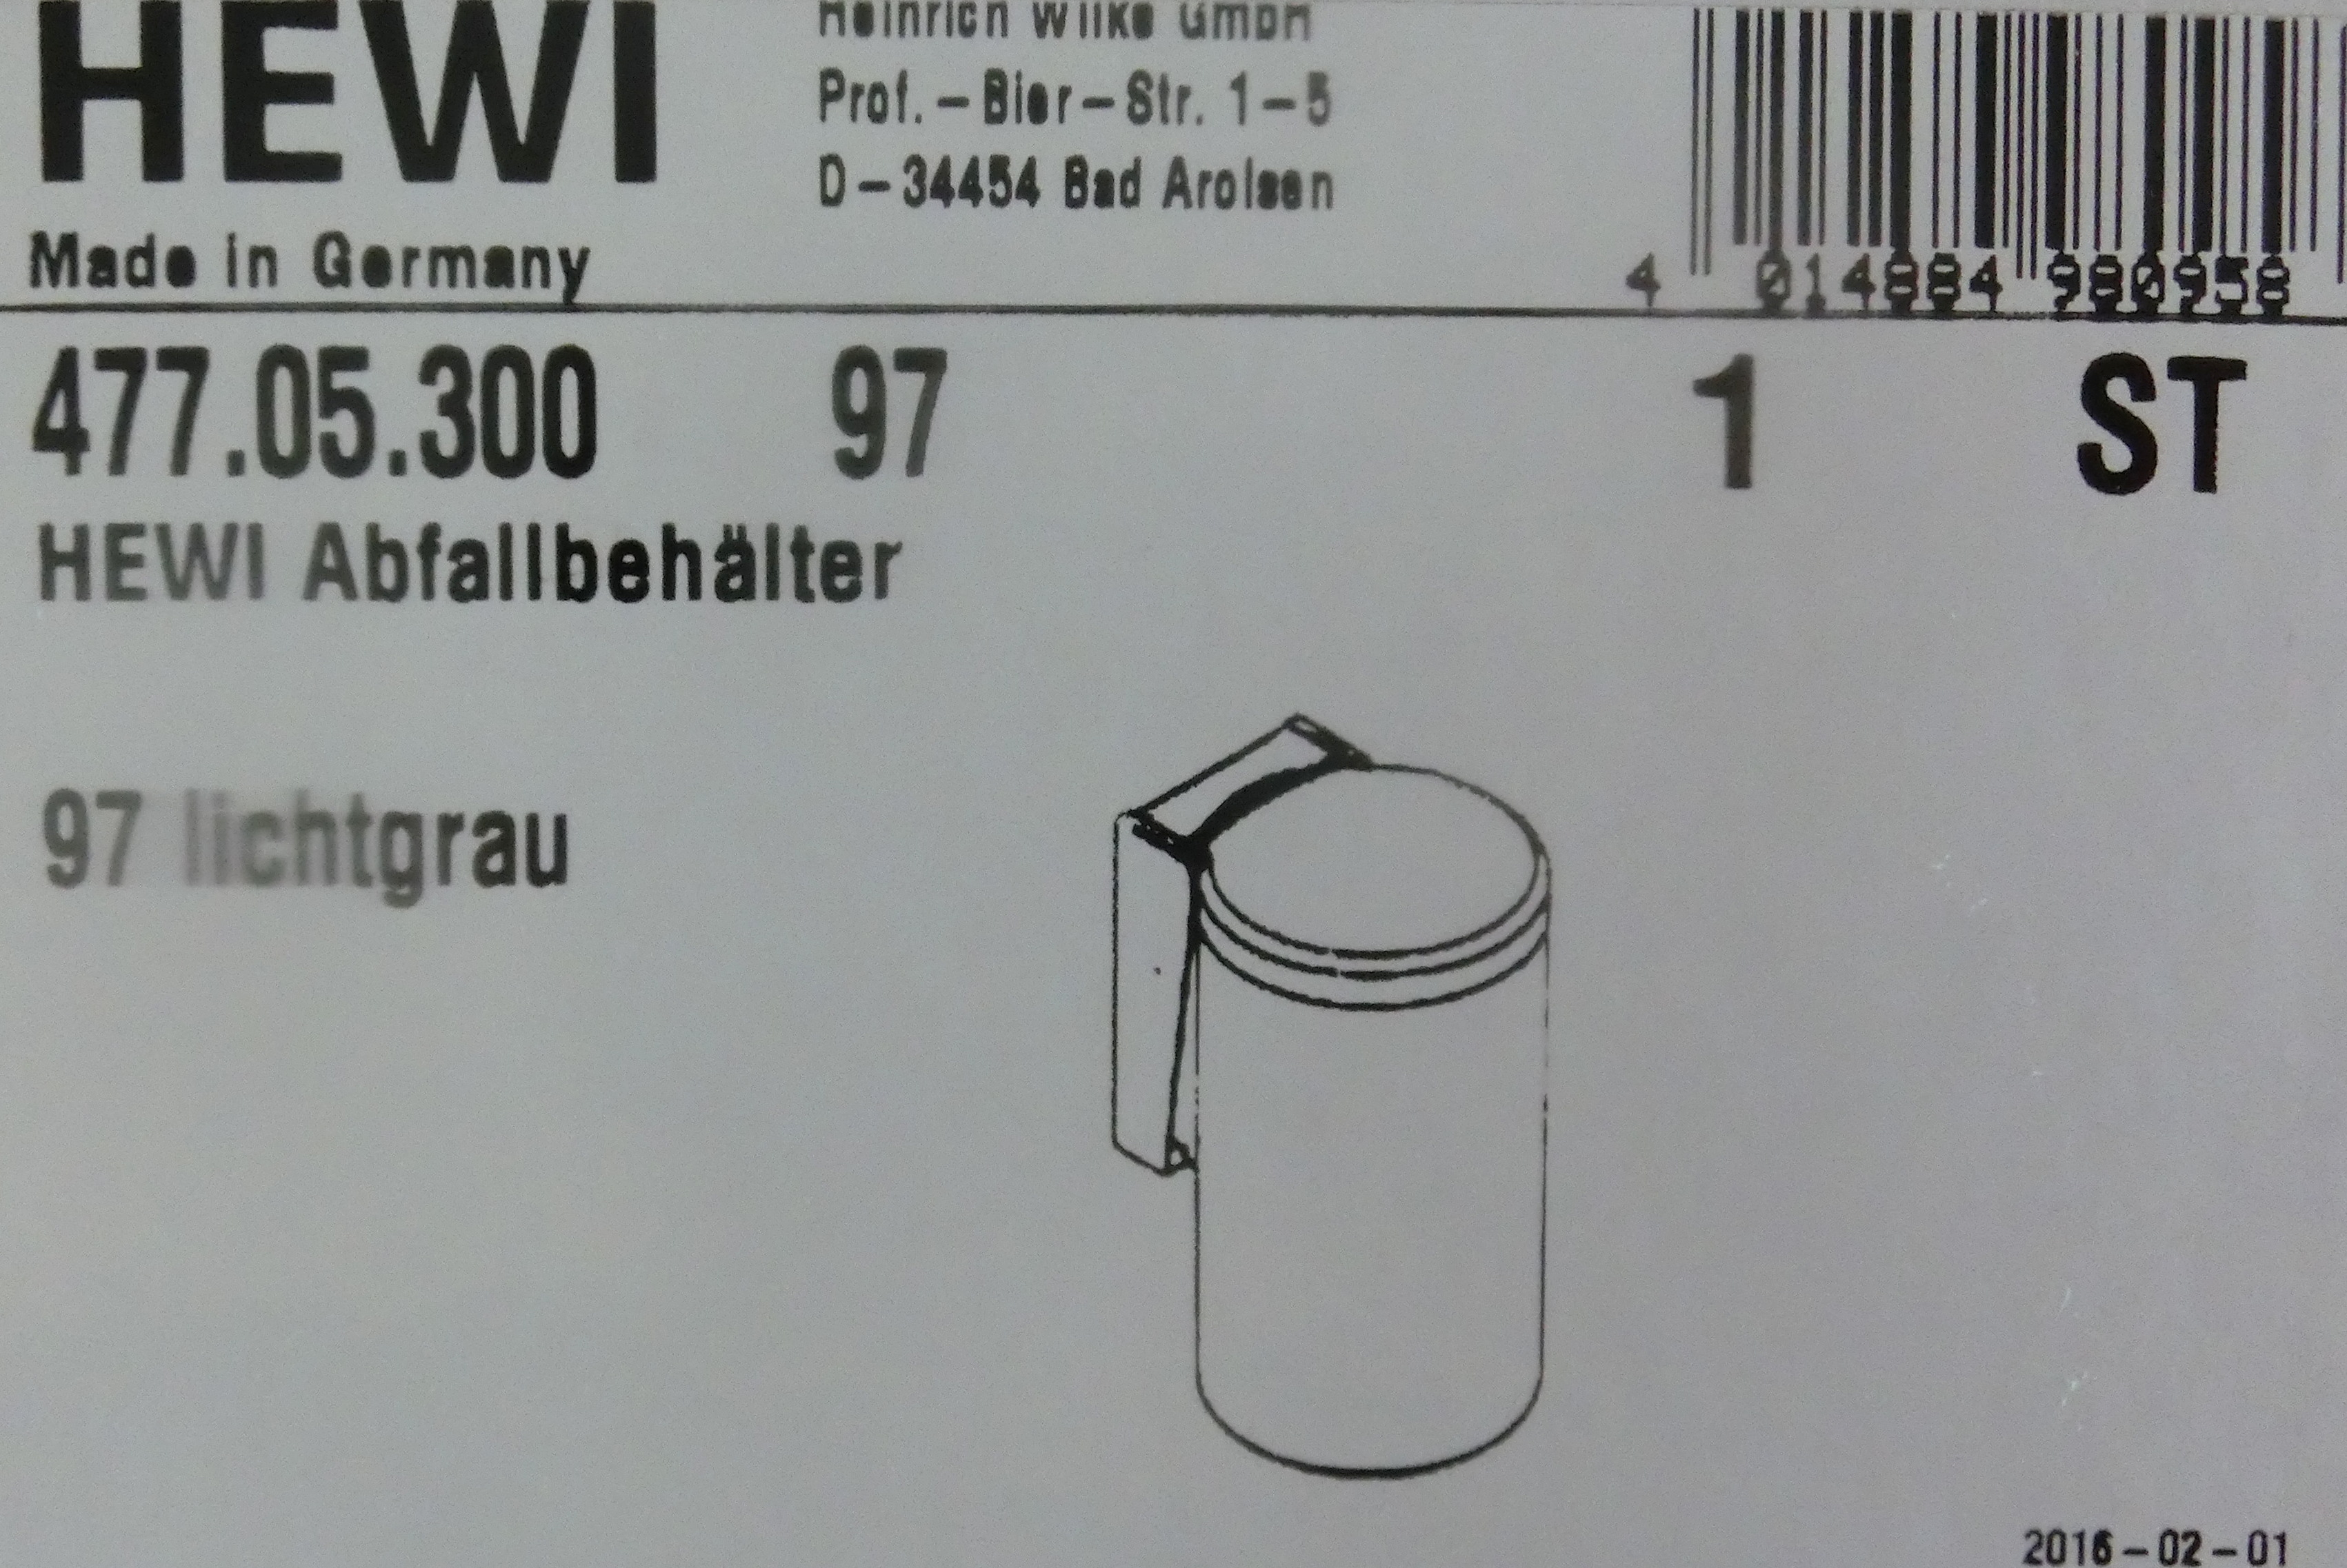 Hewi Serie 477 Abfallbehälter orange; 477.05.300-24 